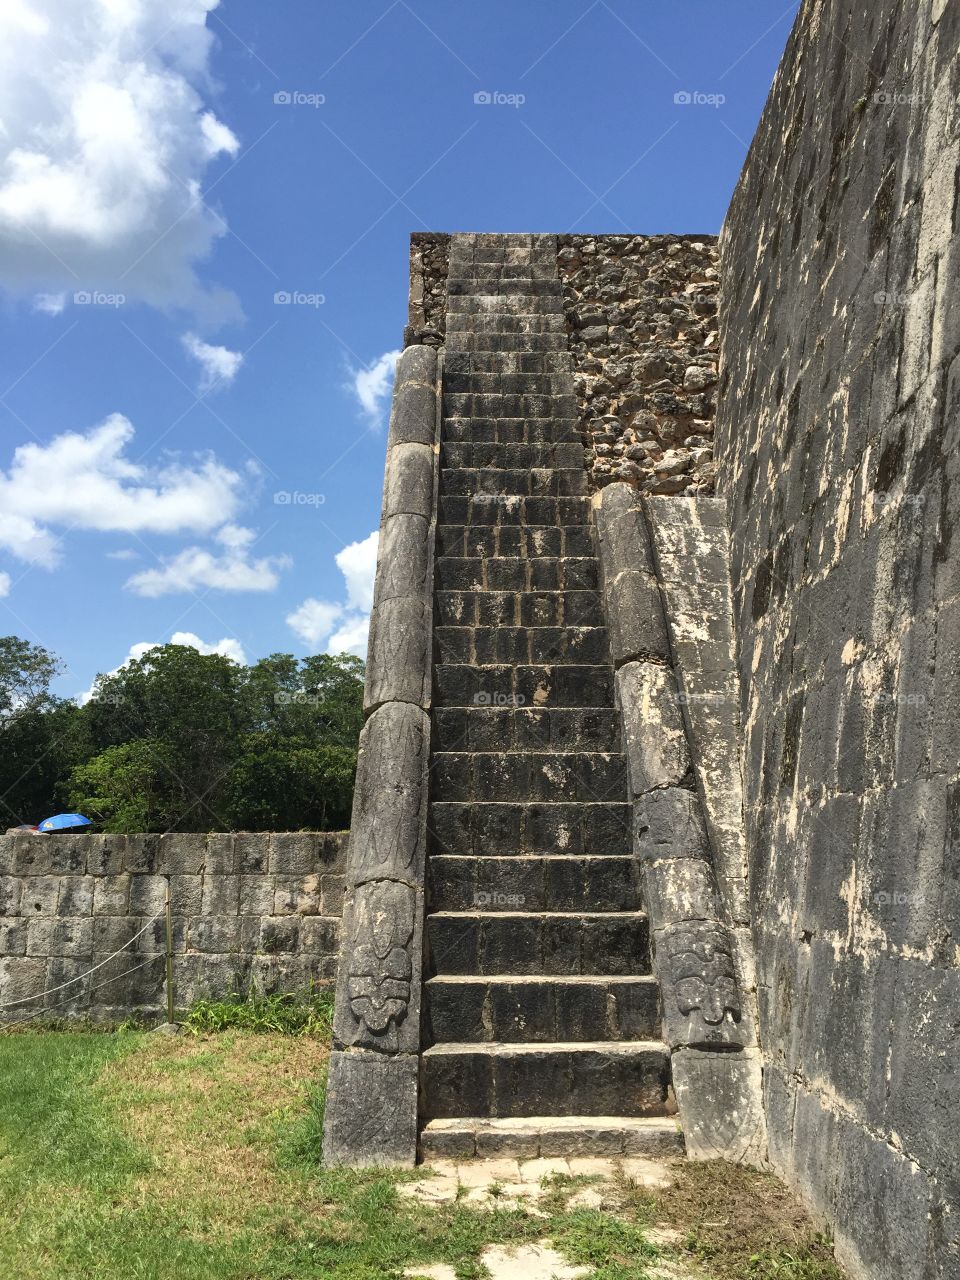 Mayan pyramid steps